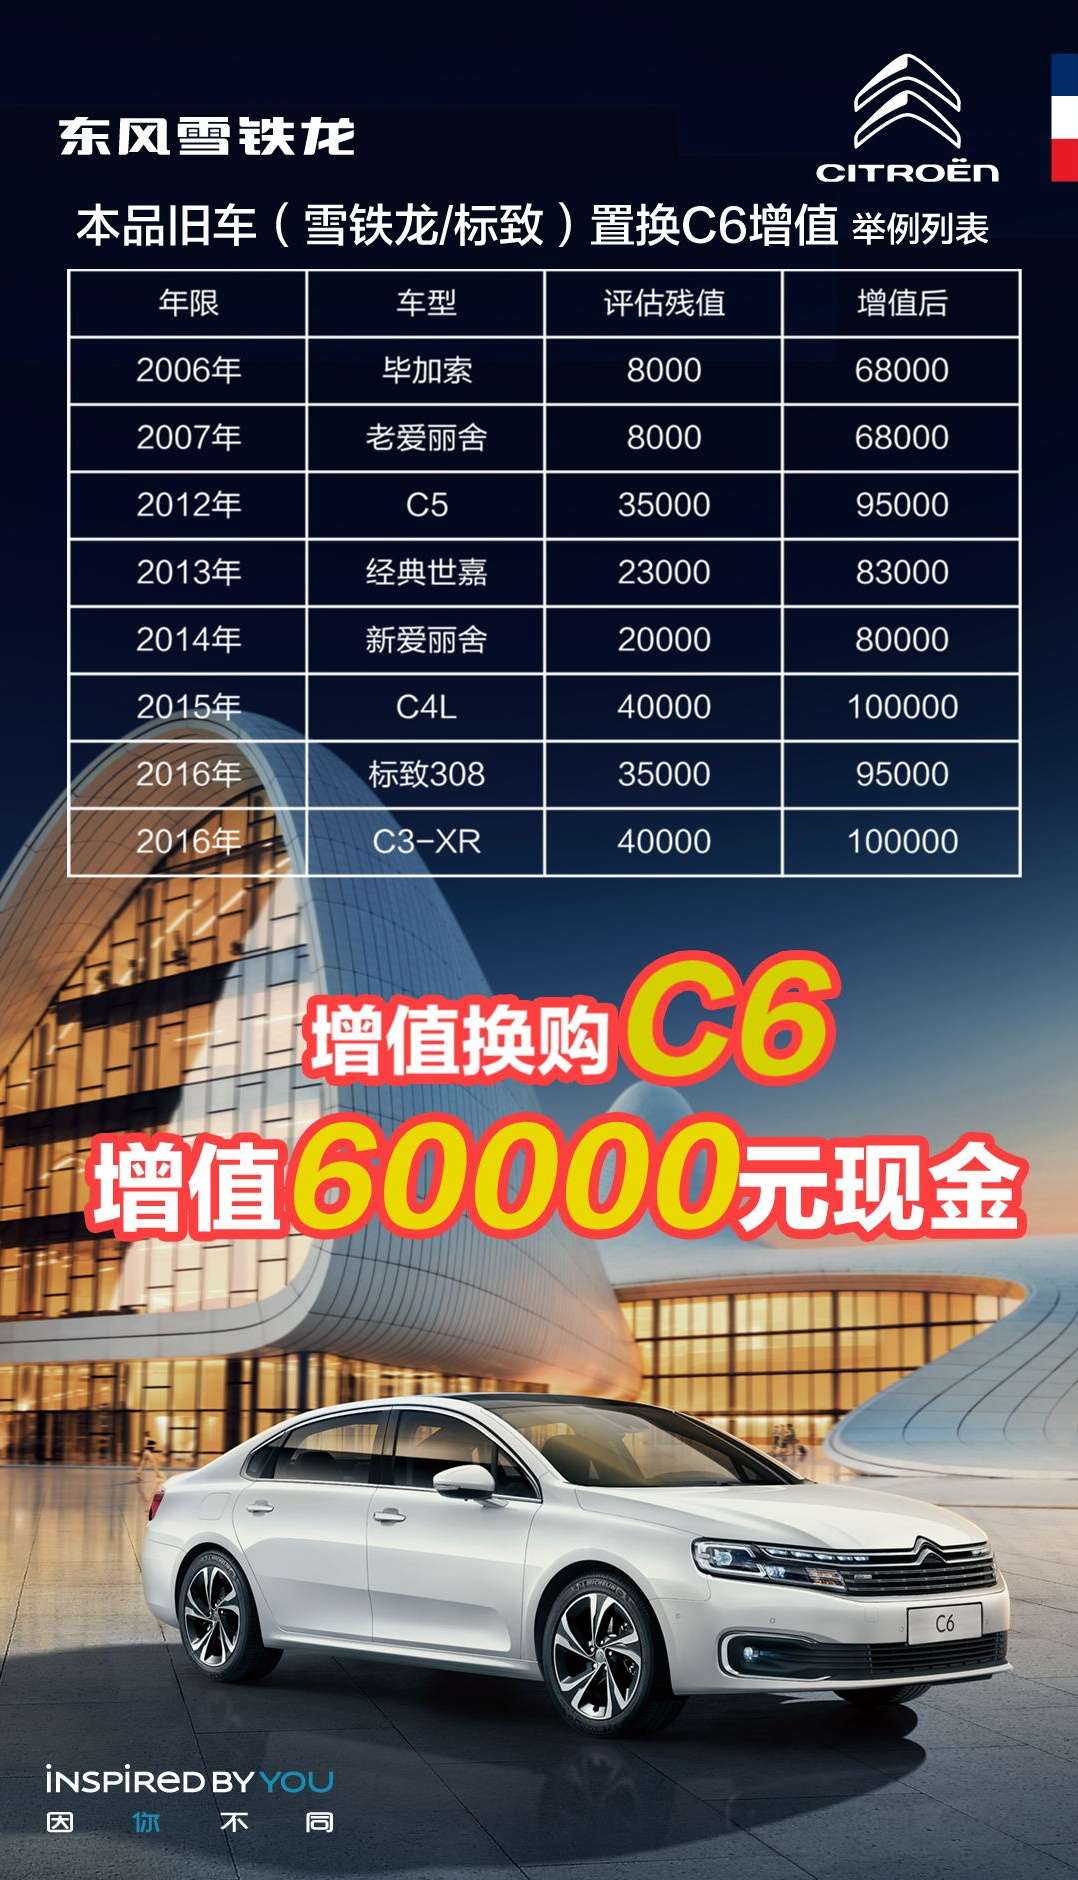 购雪铁龙C6 享至高60000元增值换购